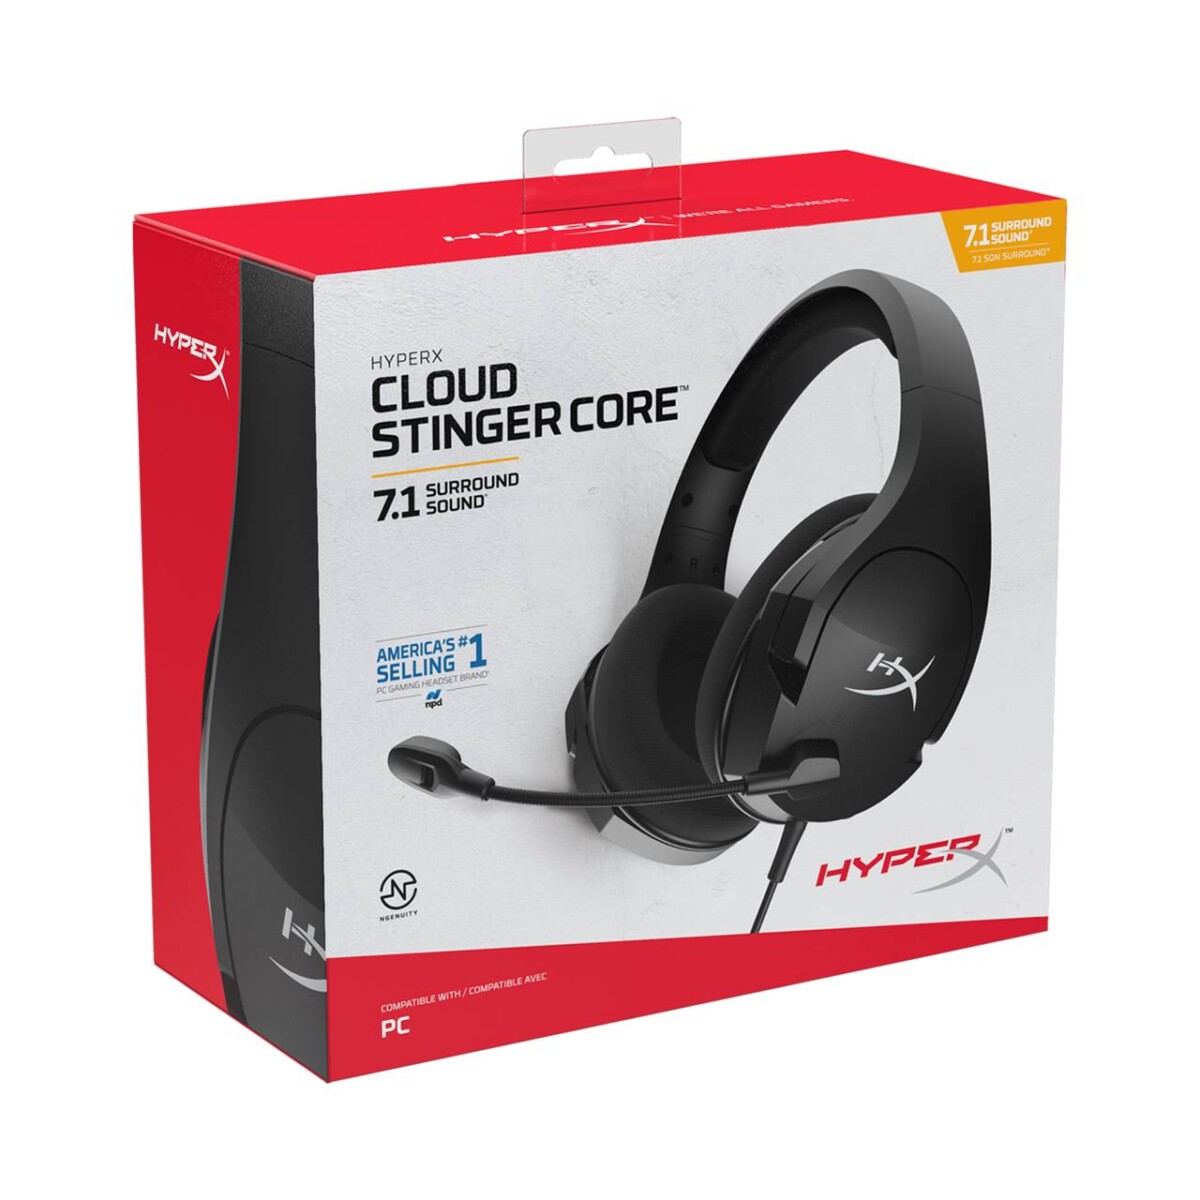 Yeni HyperX Cloud Stinger Core Oyuncu Kulaklıkları Tanıtıldı! 